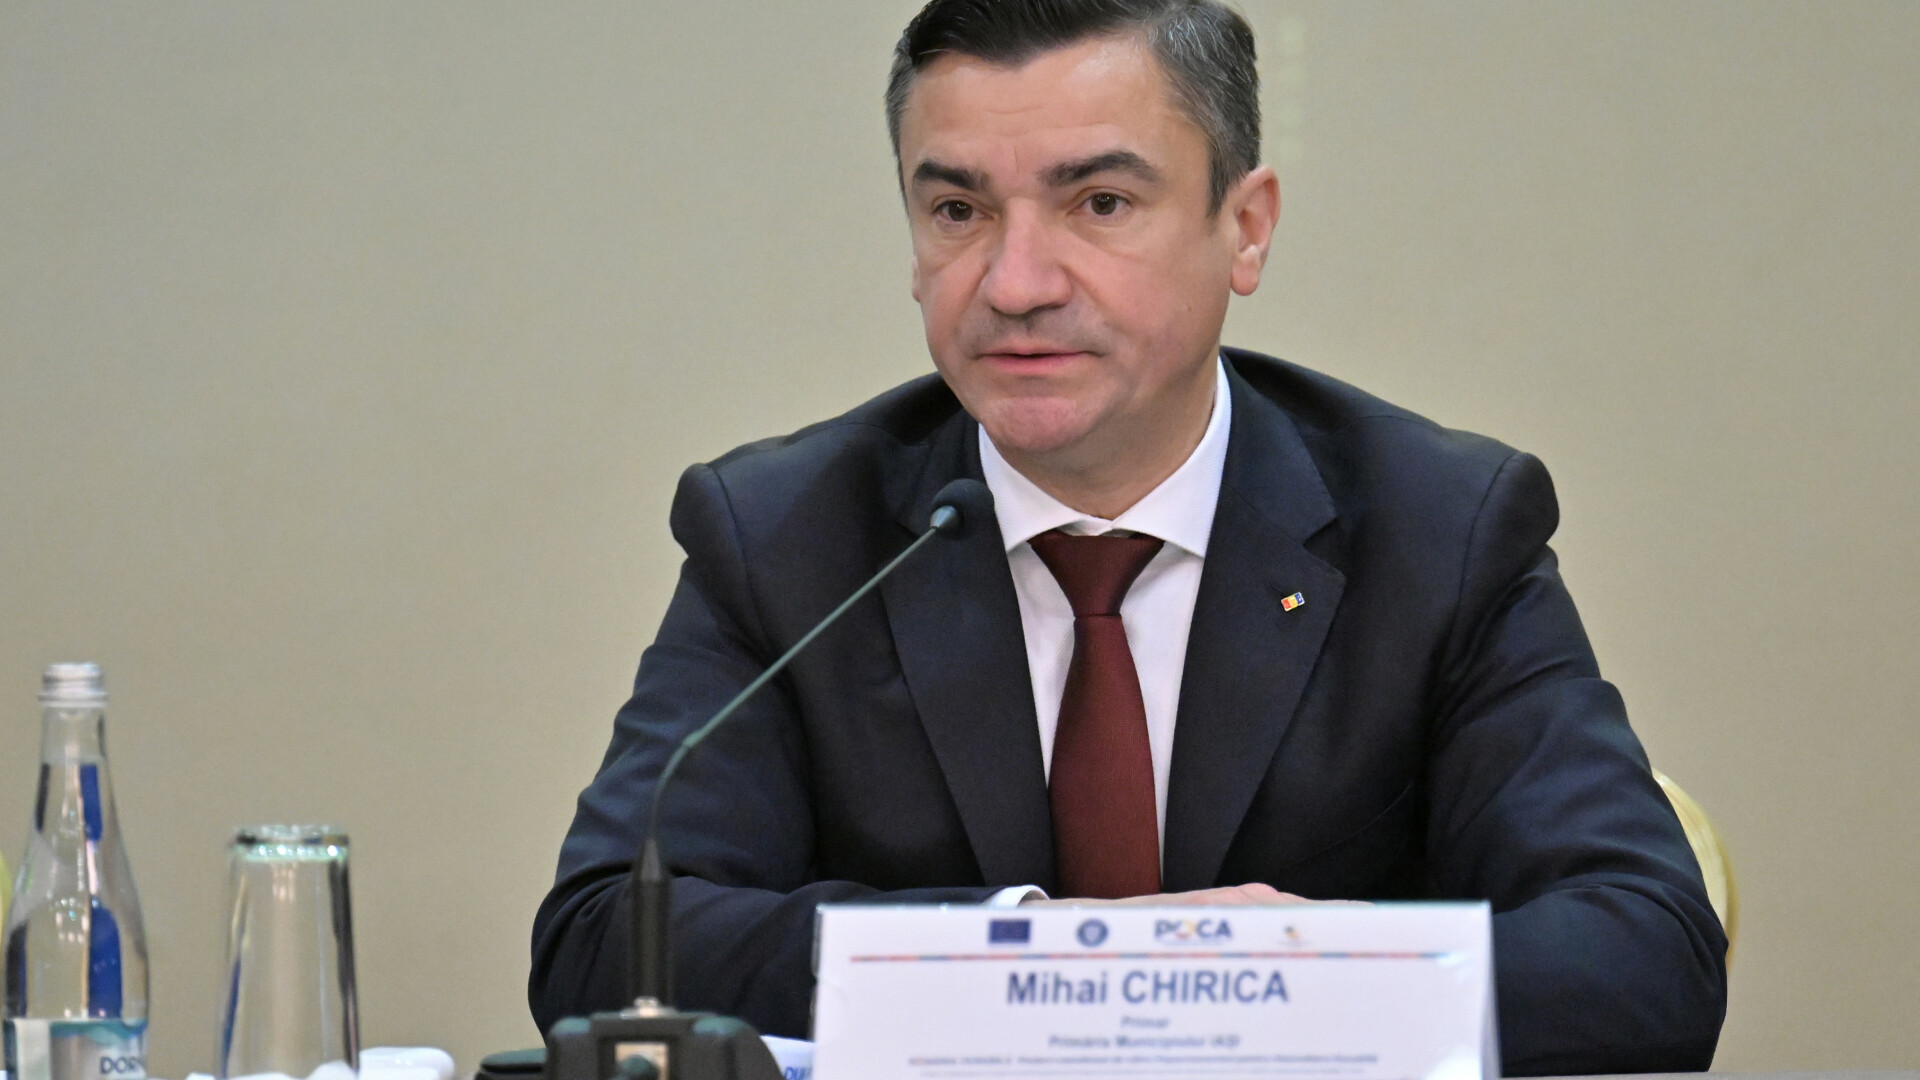 Mihai Chirica